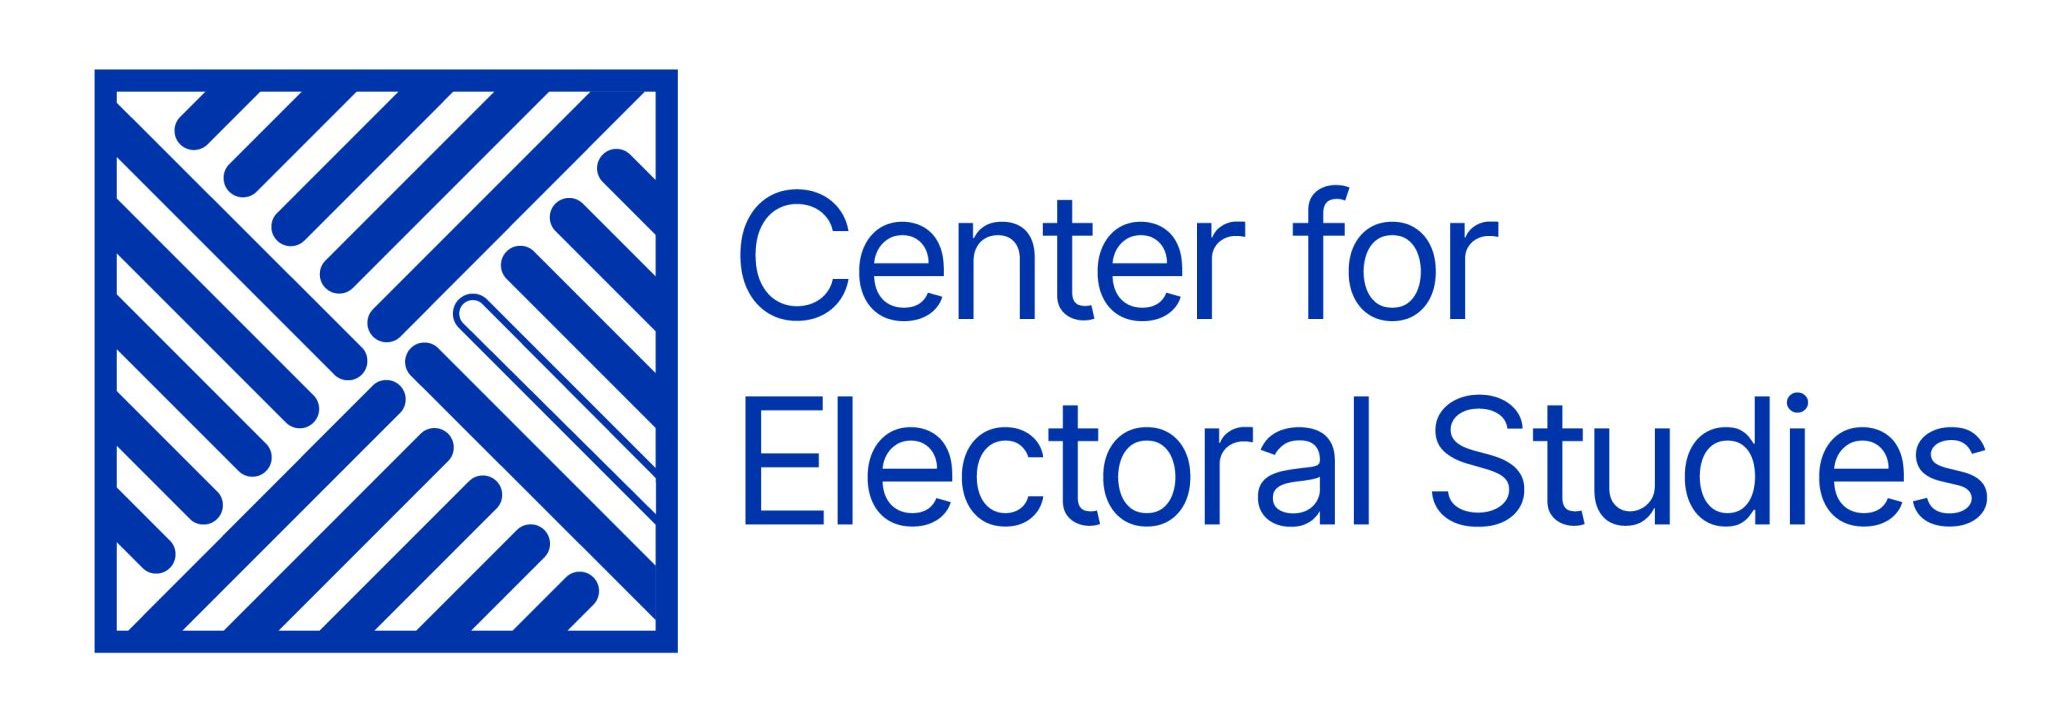 Center for Electoral Studies UW